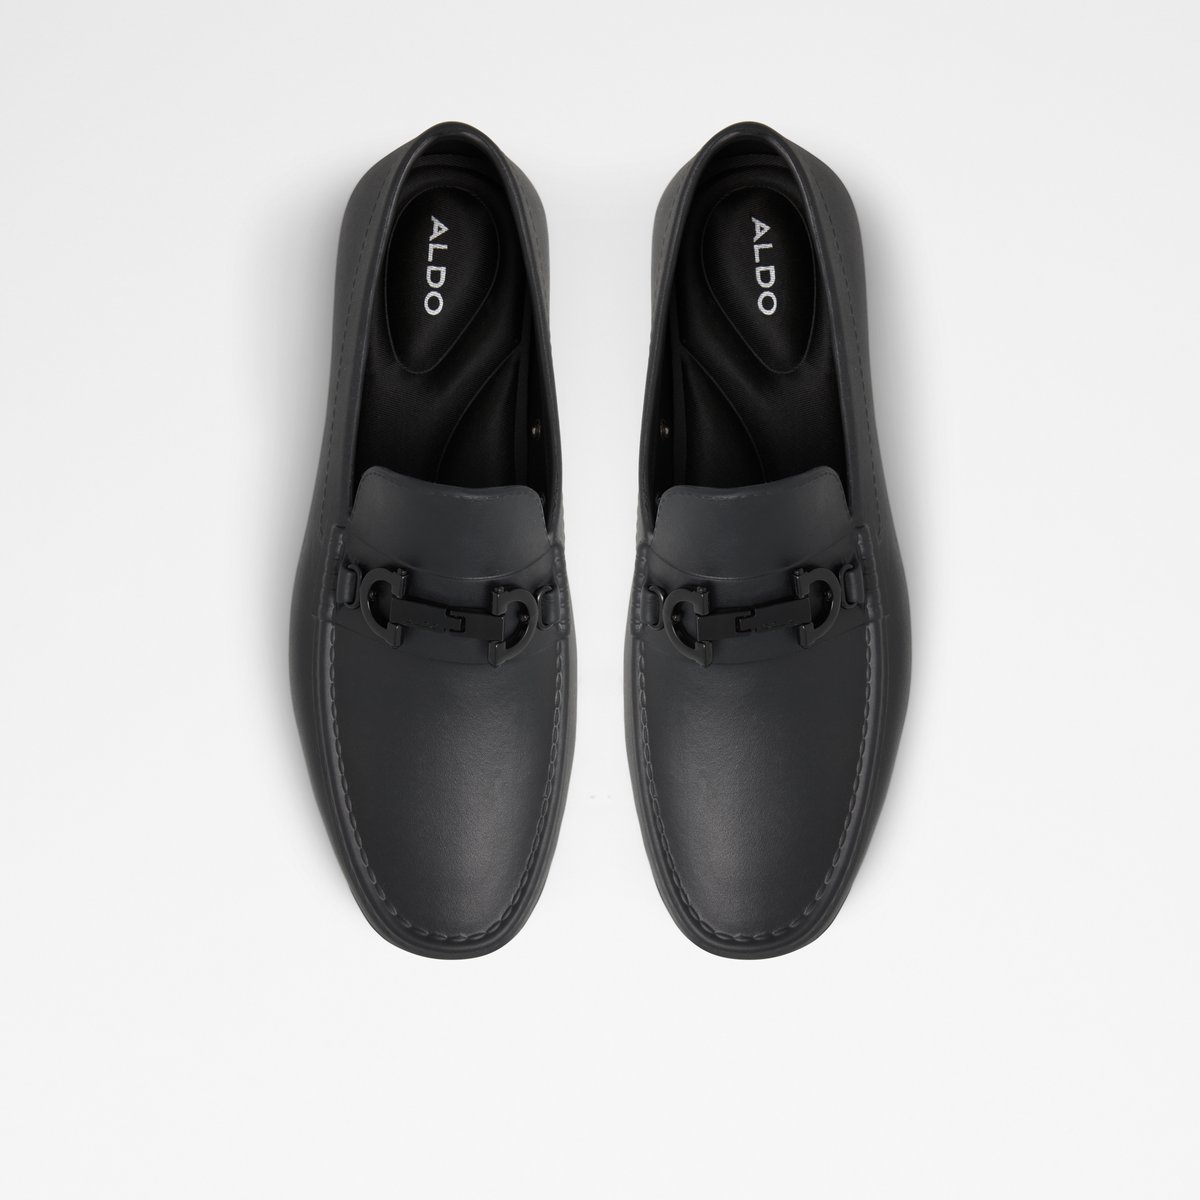 polvo Delegar raíz Gaffdan Black Men's Loafers & Slip-Ons | ALDO US